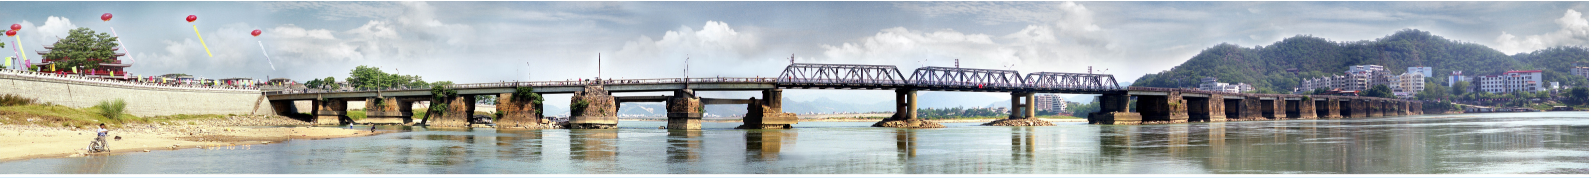 1958年改建后的广济桥。潮州广济桥文物管理所供图